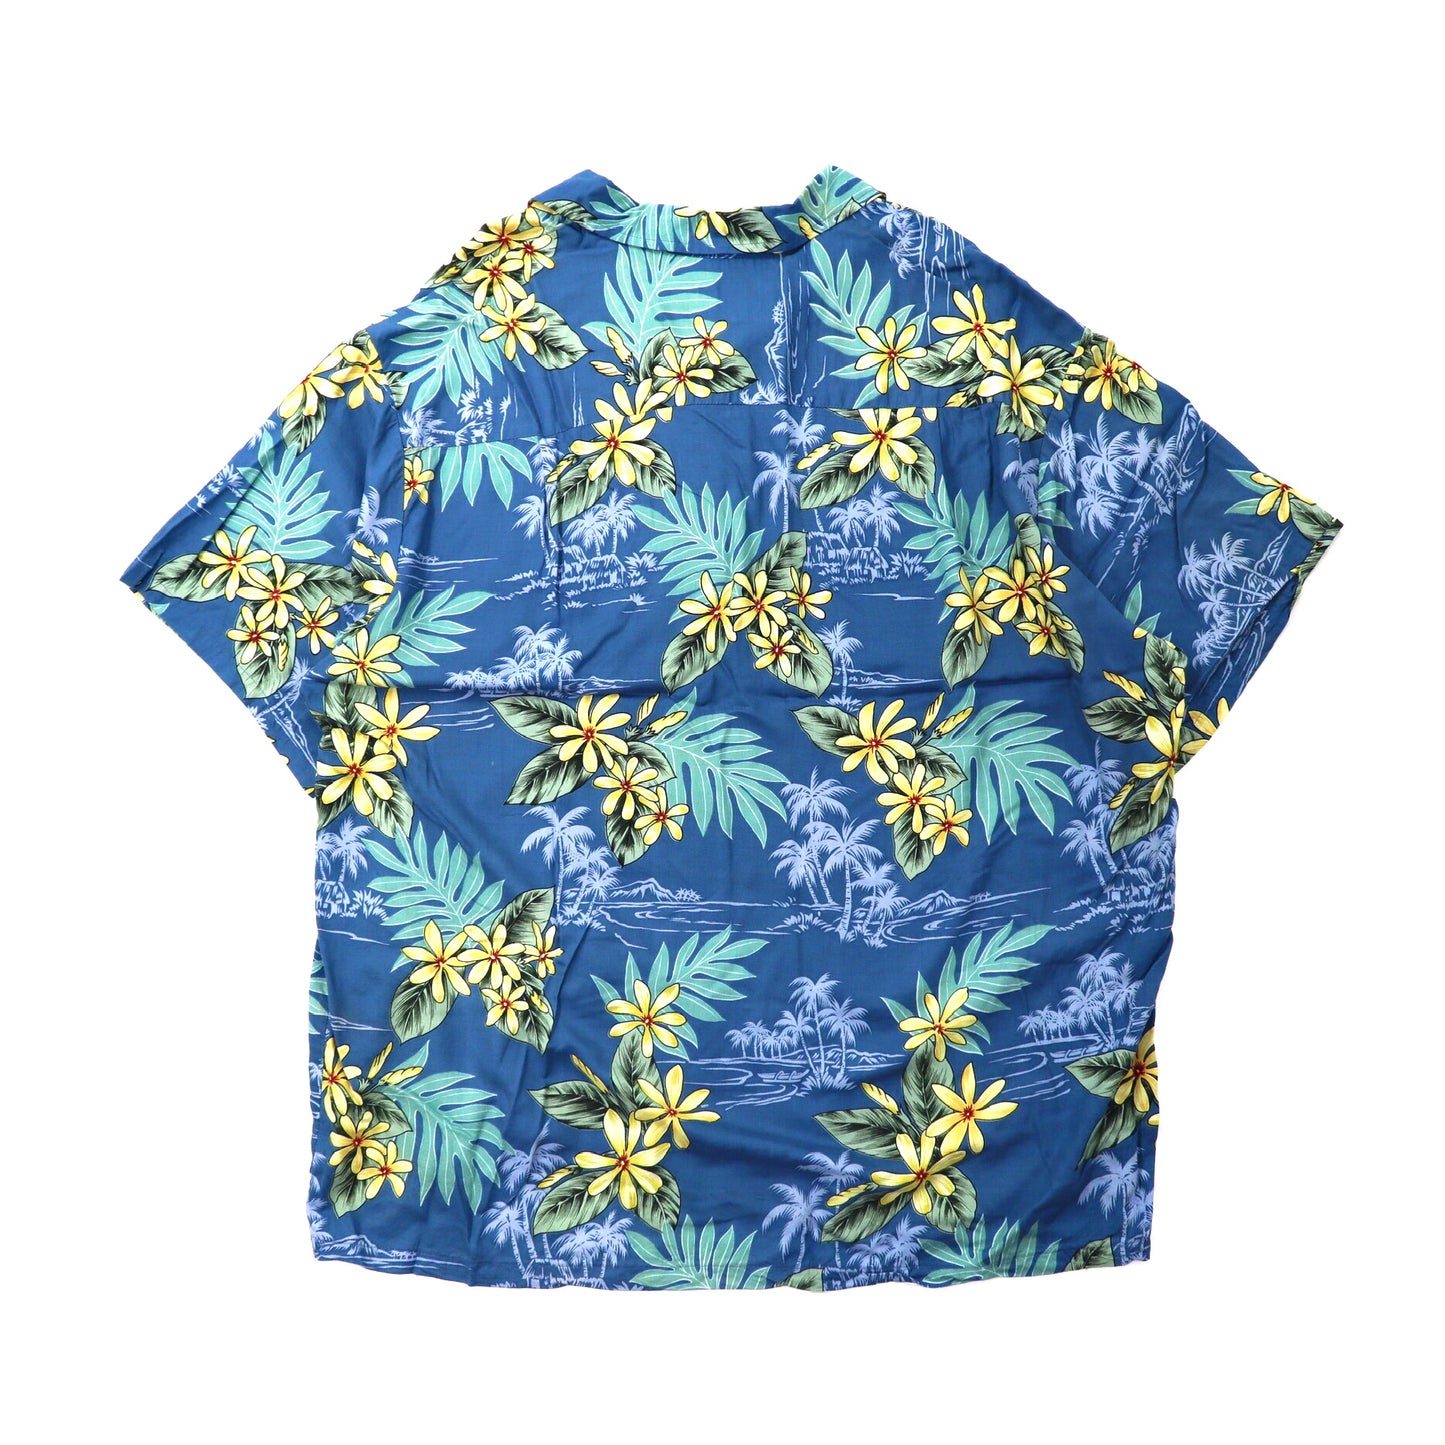 Bishop St. apparel アロハシャツ XL ネイビー ボタニカル柄 ビッグサイズ ハワイ製